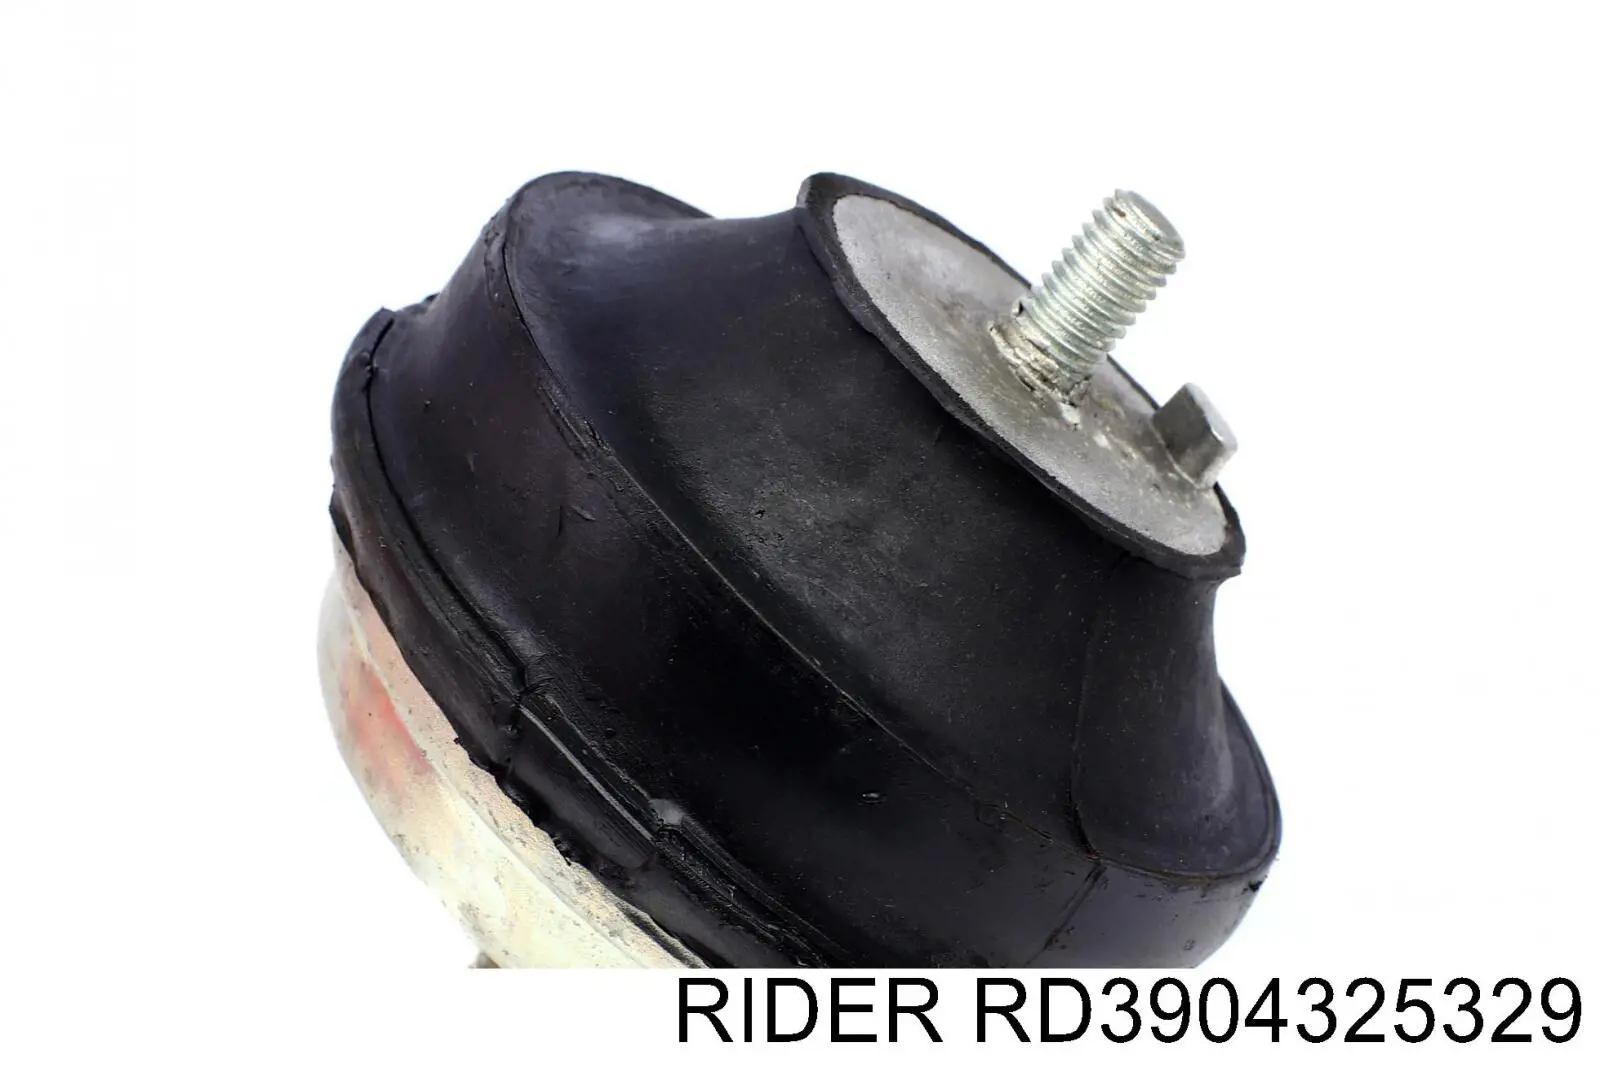 RD3904325329 Rider soporte de motor, izquierda / derecha